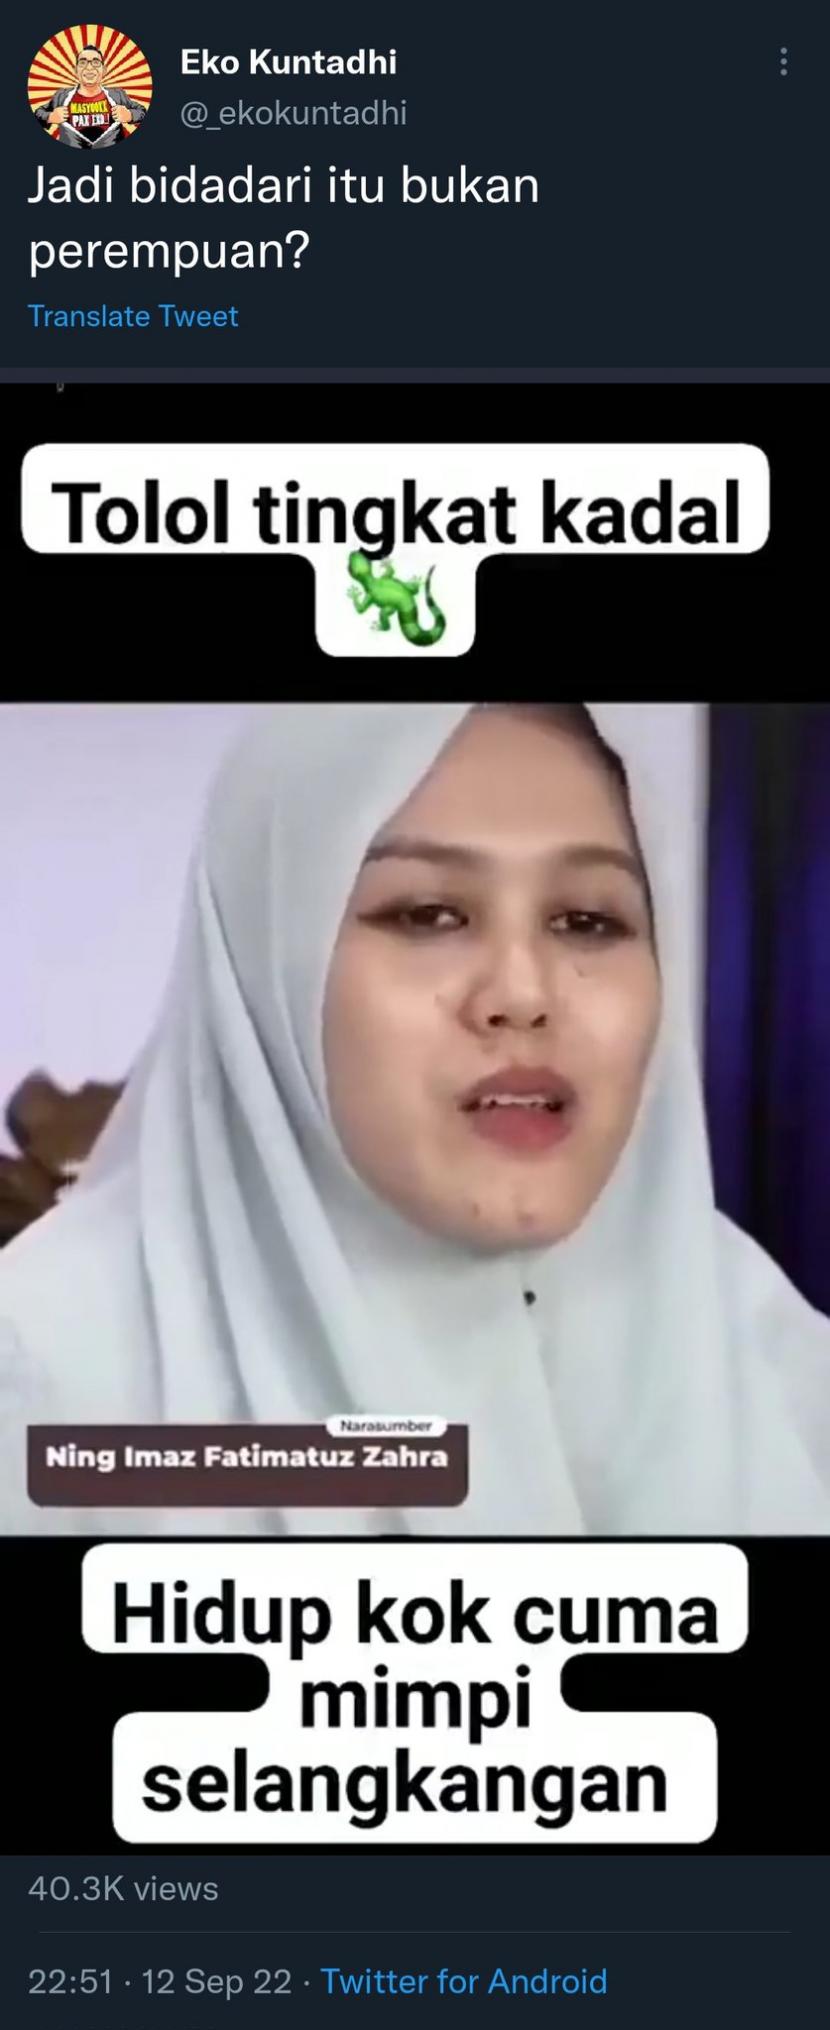 Ustadzah Ponpes Lirboyo, Kota Kediri, Jawa Timur, Imaz Fatimatuz Zahra alias Ning Imaz menjadi korban penghinaan dan pelecehan di lini masa Twitter.